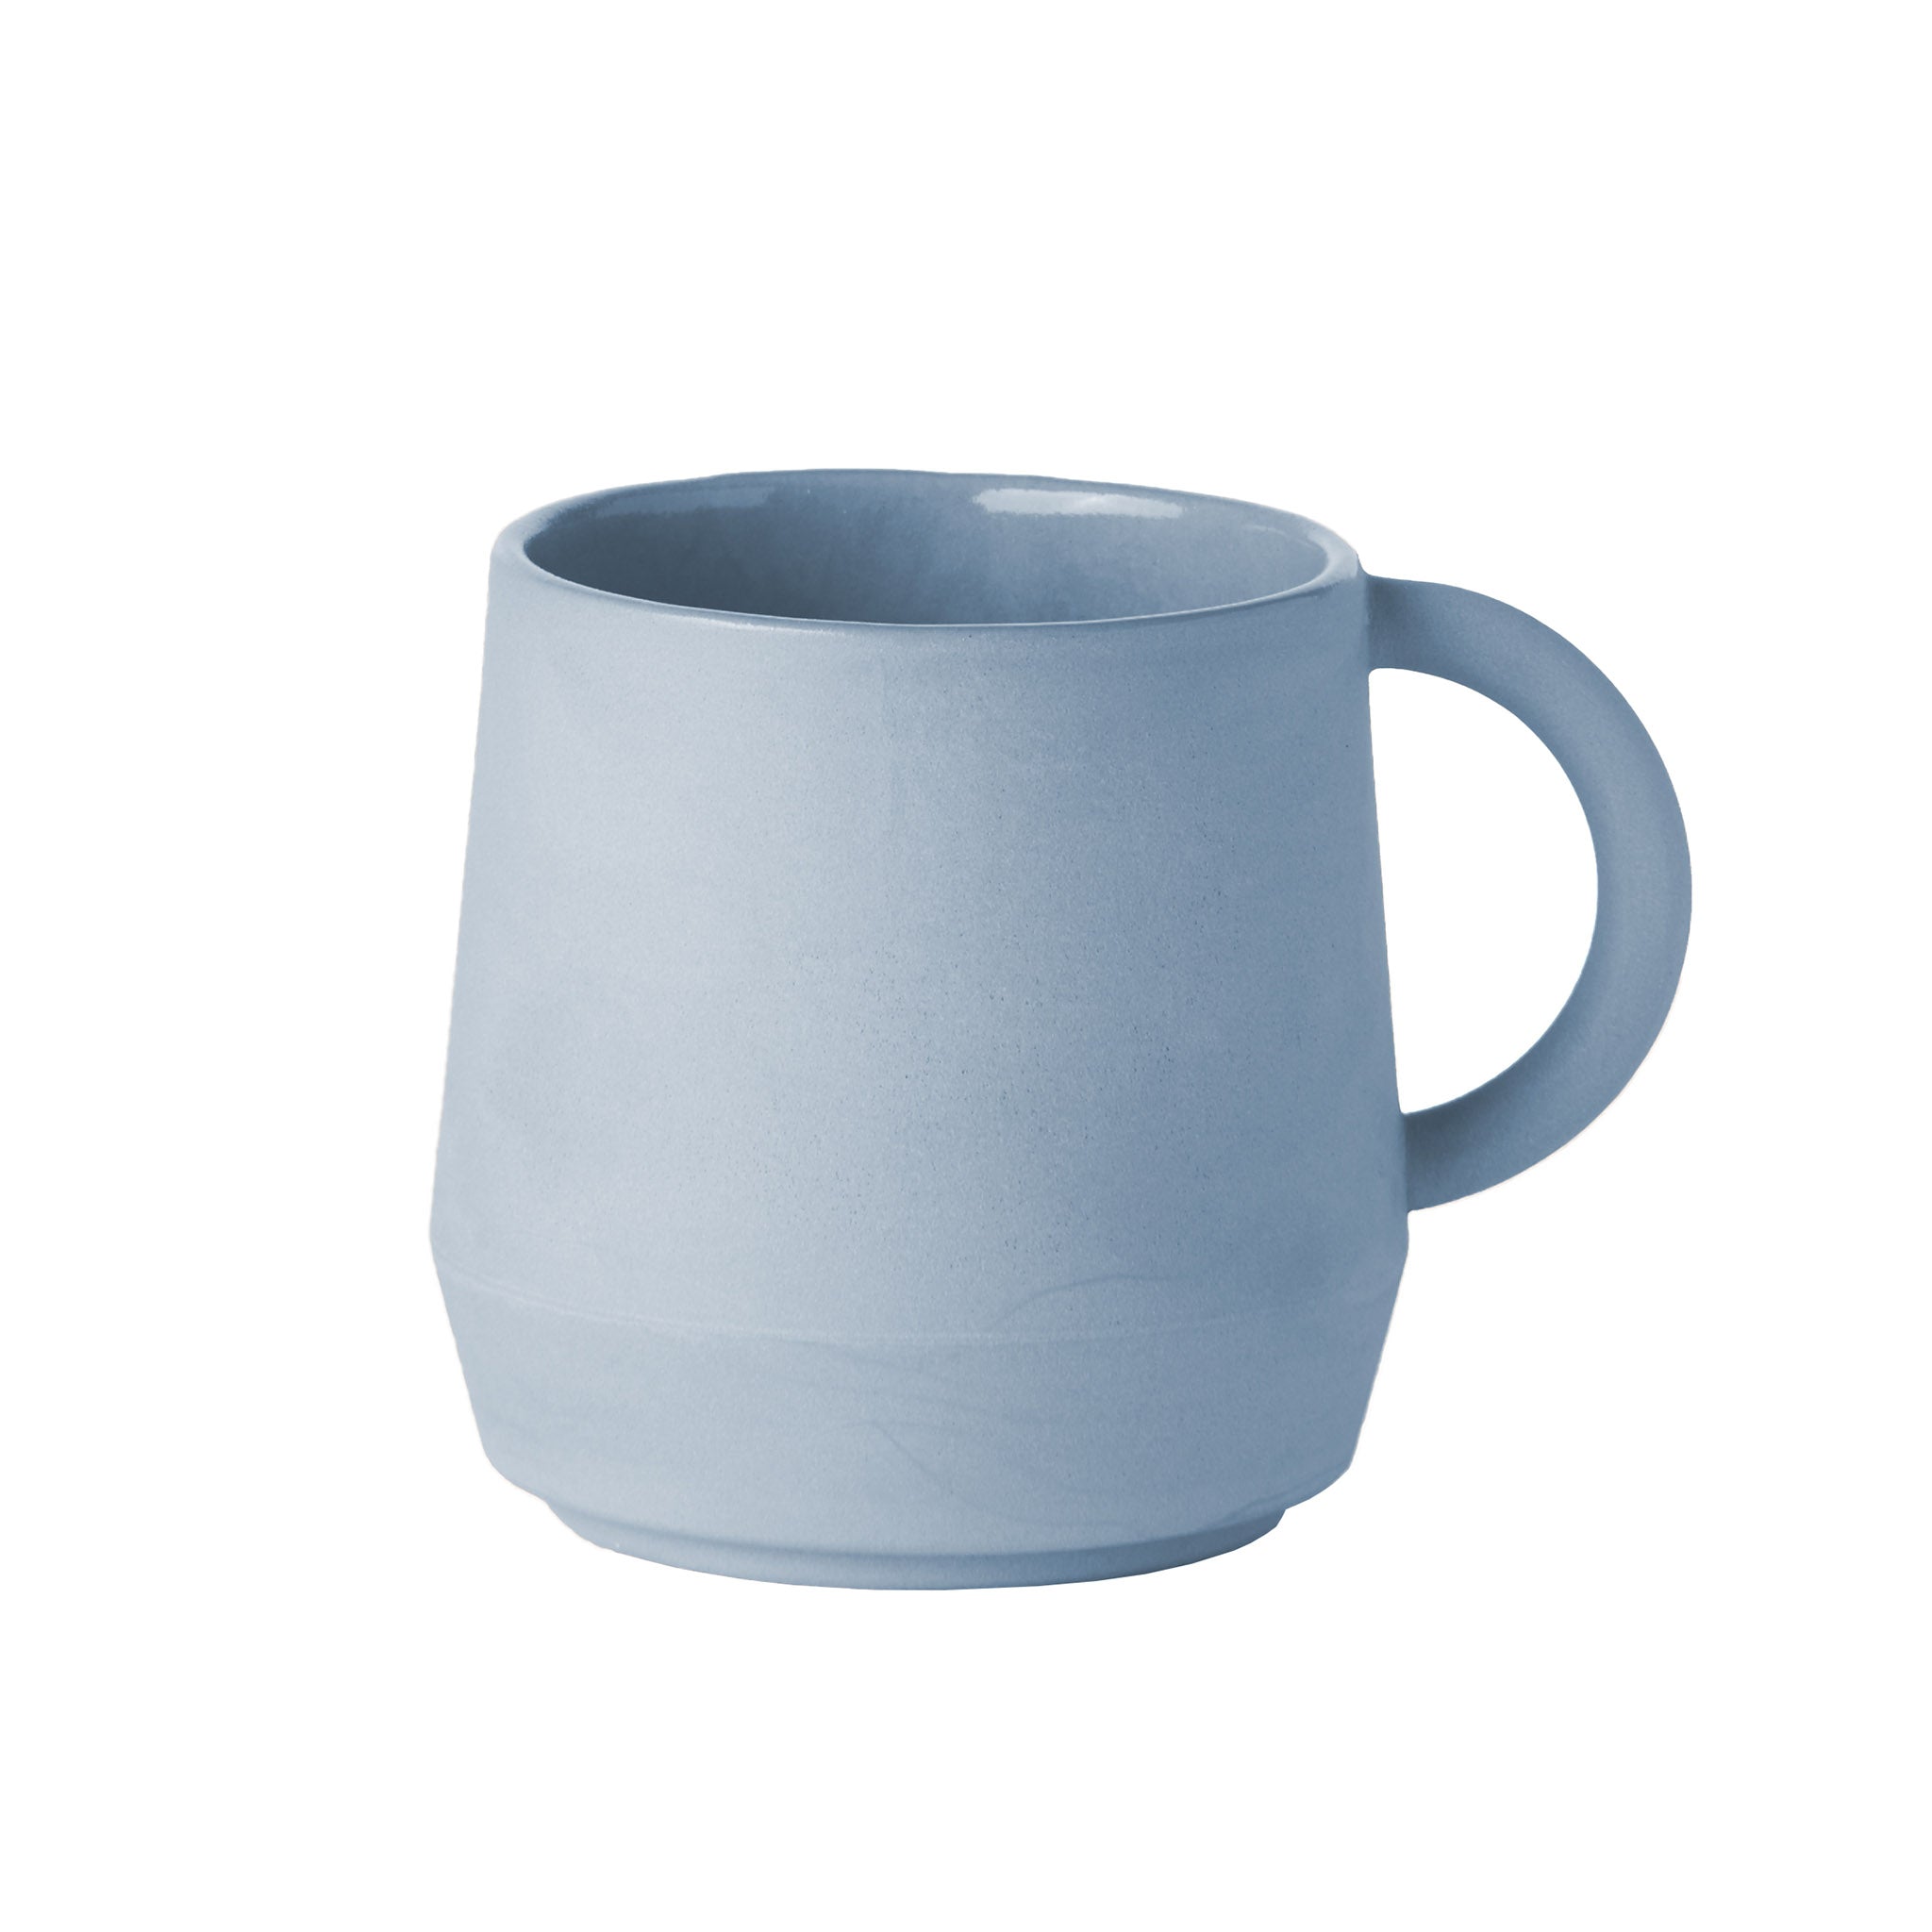 Unison Tasse aus Keramik von Schneid Studio in der Farbe Babyblau